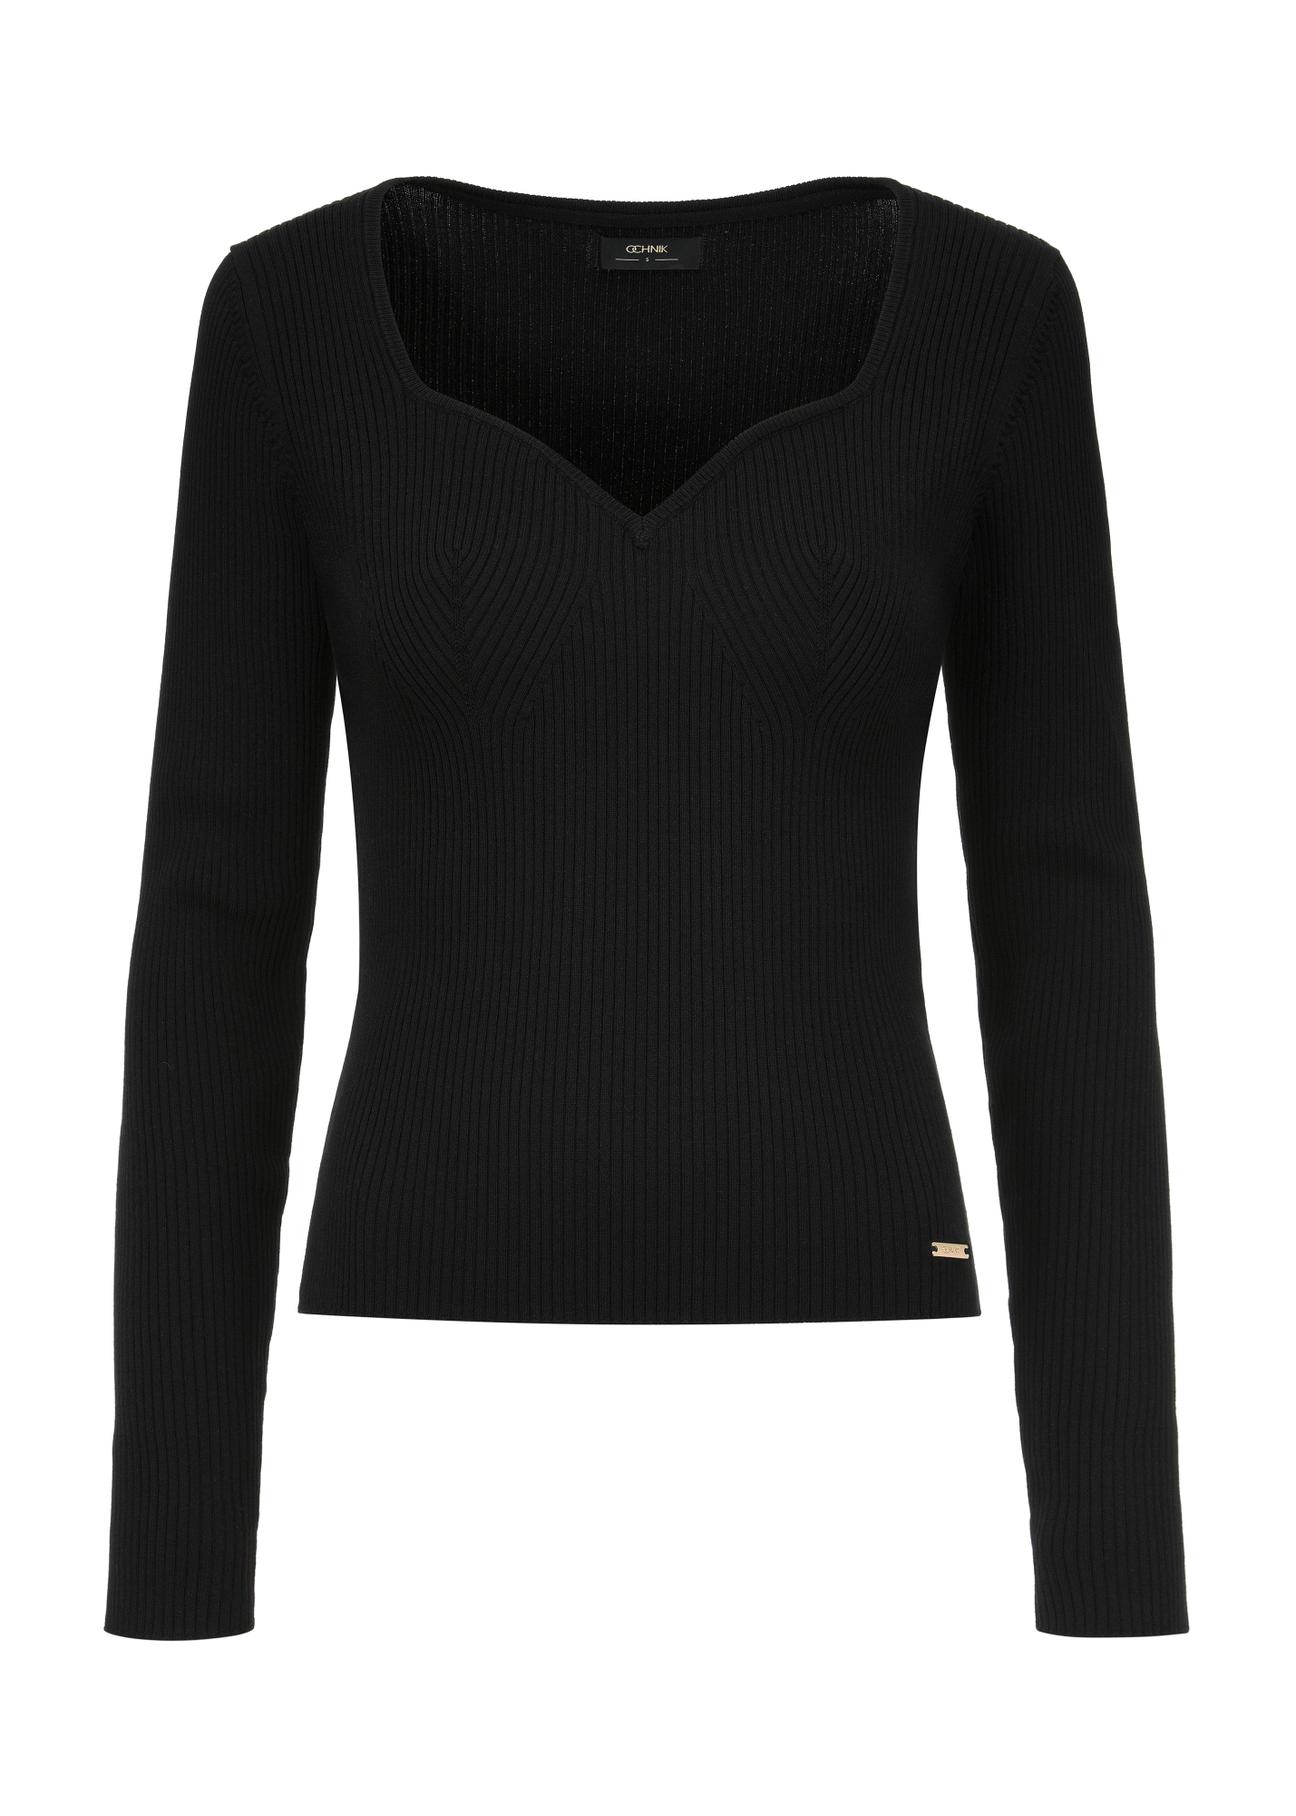 Czarny sweter z dekoltem w kształcie serca SWEDT-0206-99(W24)